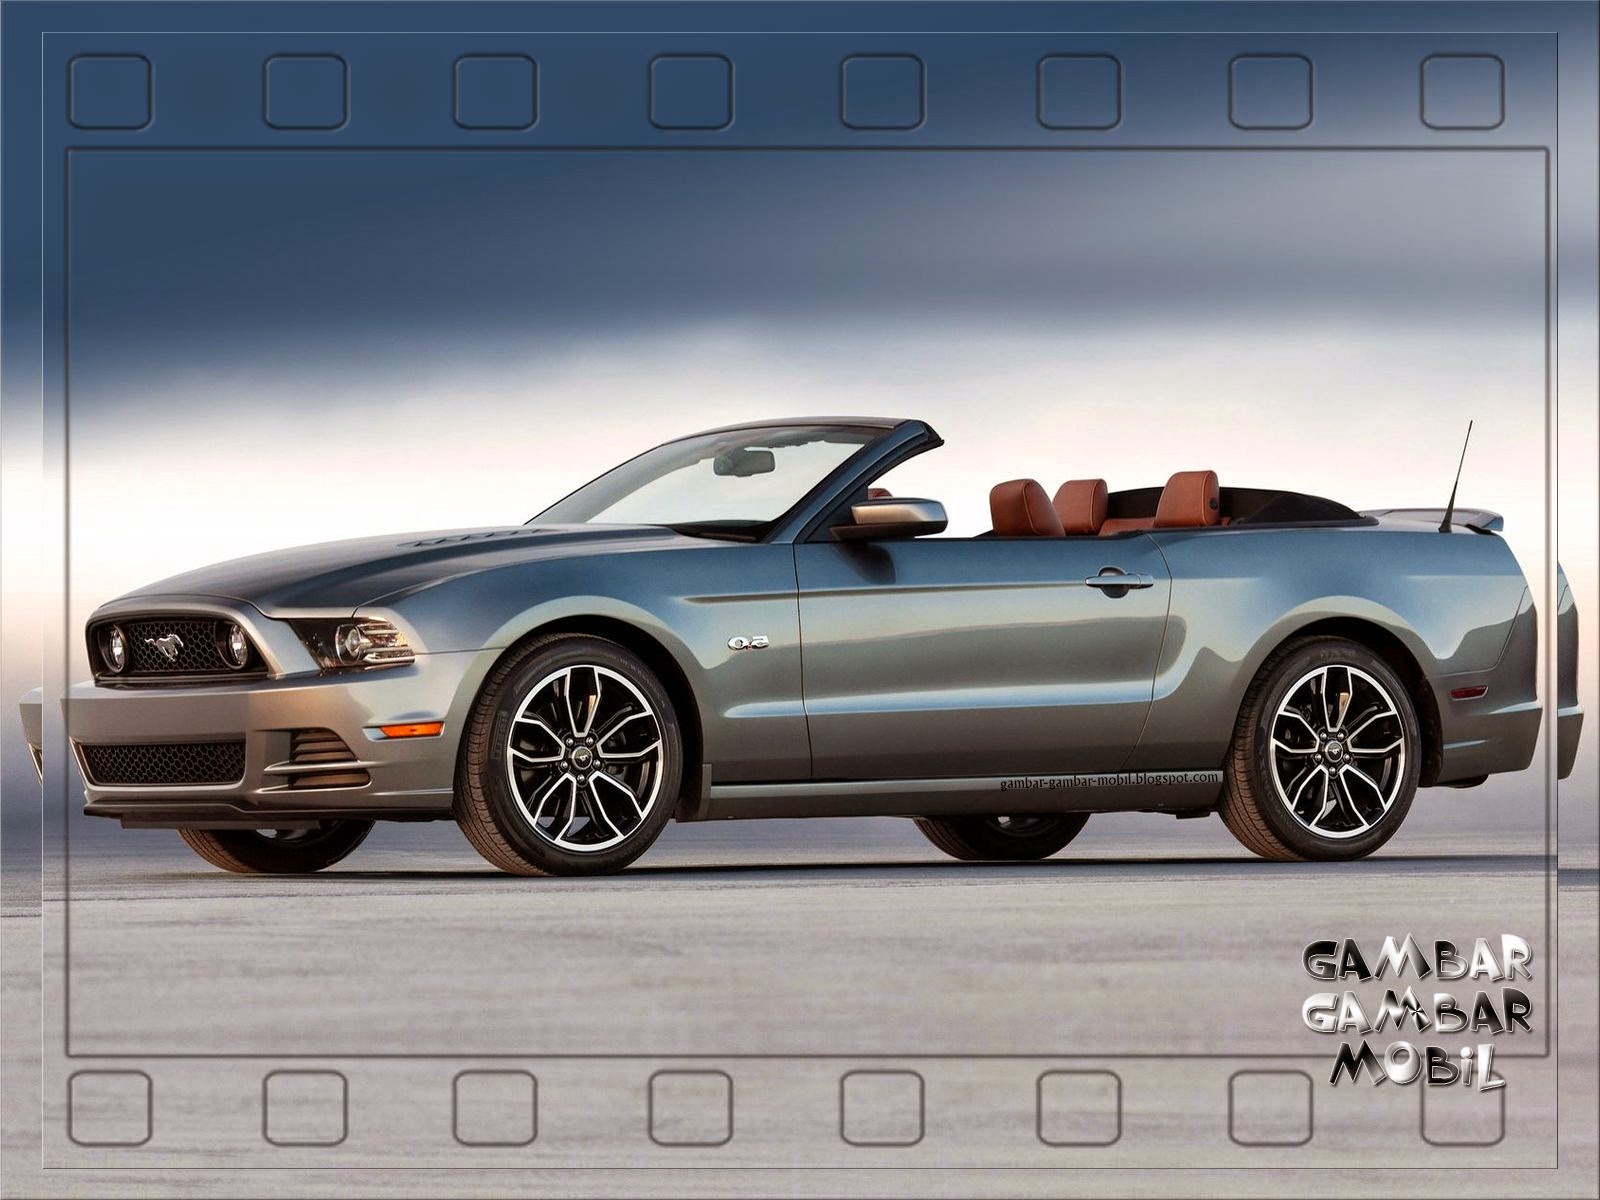 Gambar Mobil Mustang CINTA MOBIL